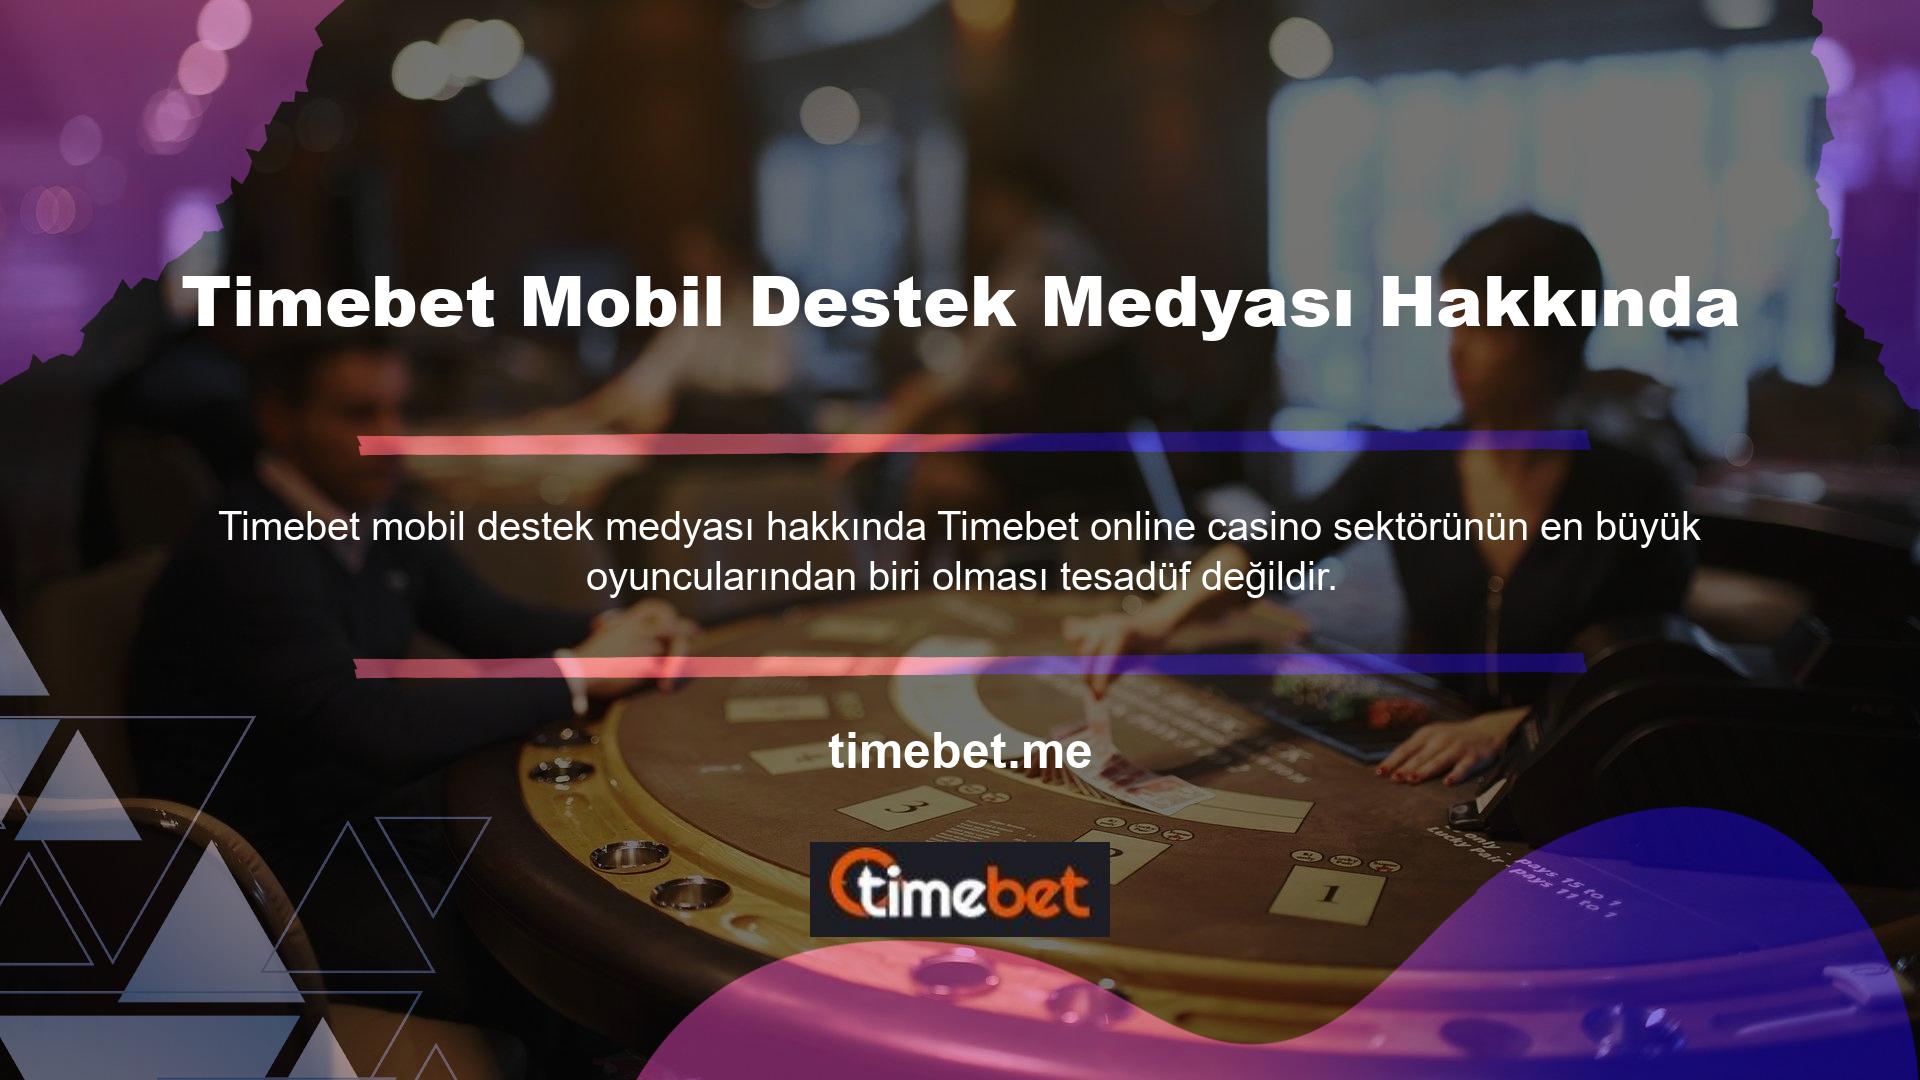 Timebet mobil destek medyası hakkında ayrıntılara girmeden önce, bu web sitesinin tamamen okunaklı ve güvenilir olduğundan emin olmak için Timebet bilgilerini güncel tutmak önemlidir